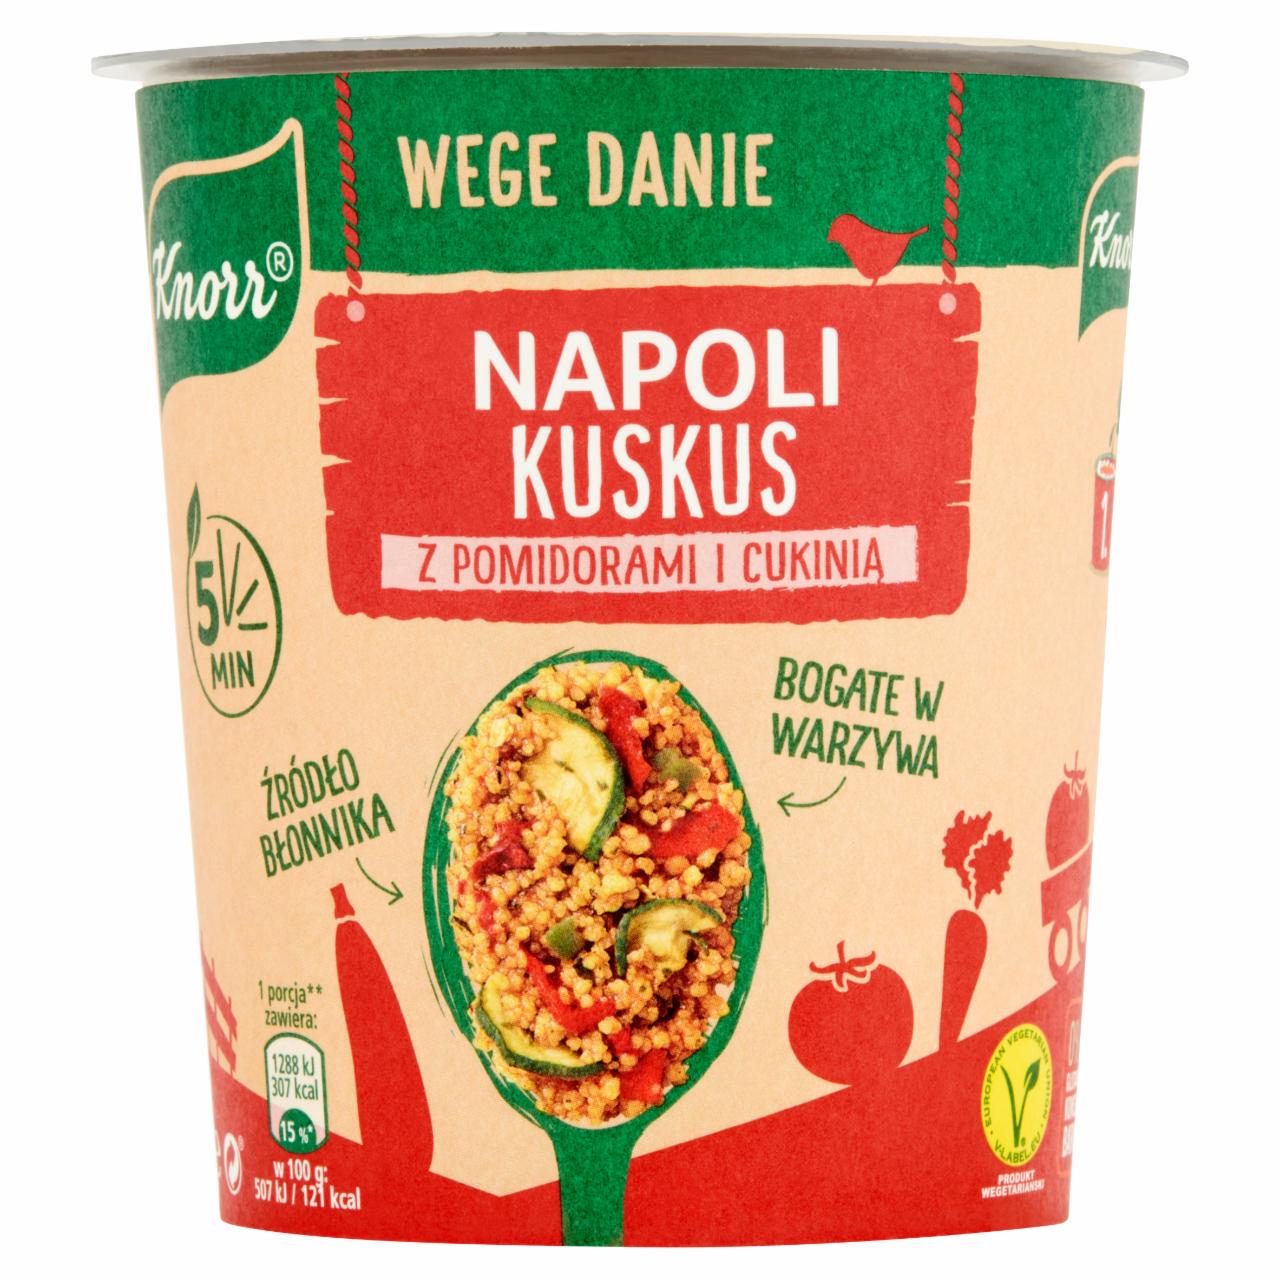 Zdjęcia - Knorr Wege danie Napoli kuskus z pomidorami i cukinią 70 g